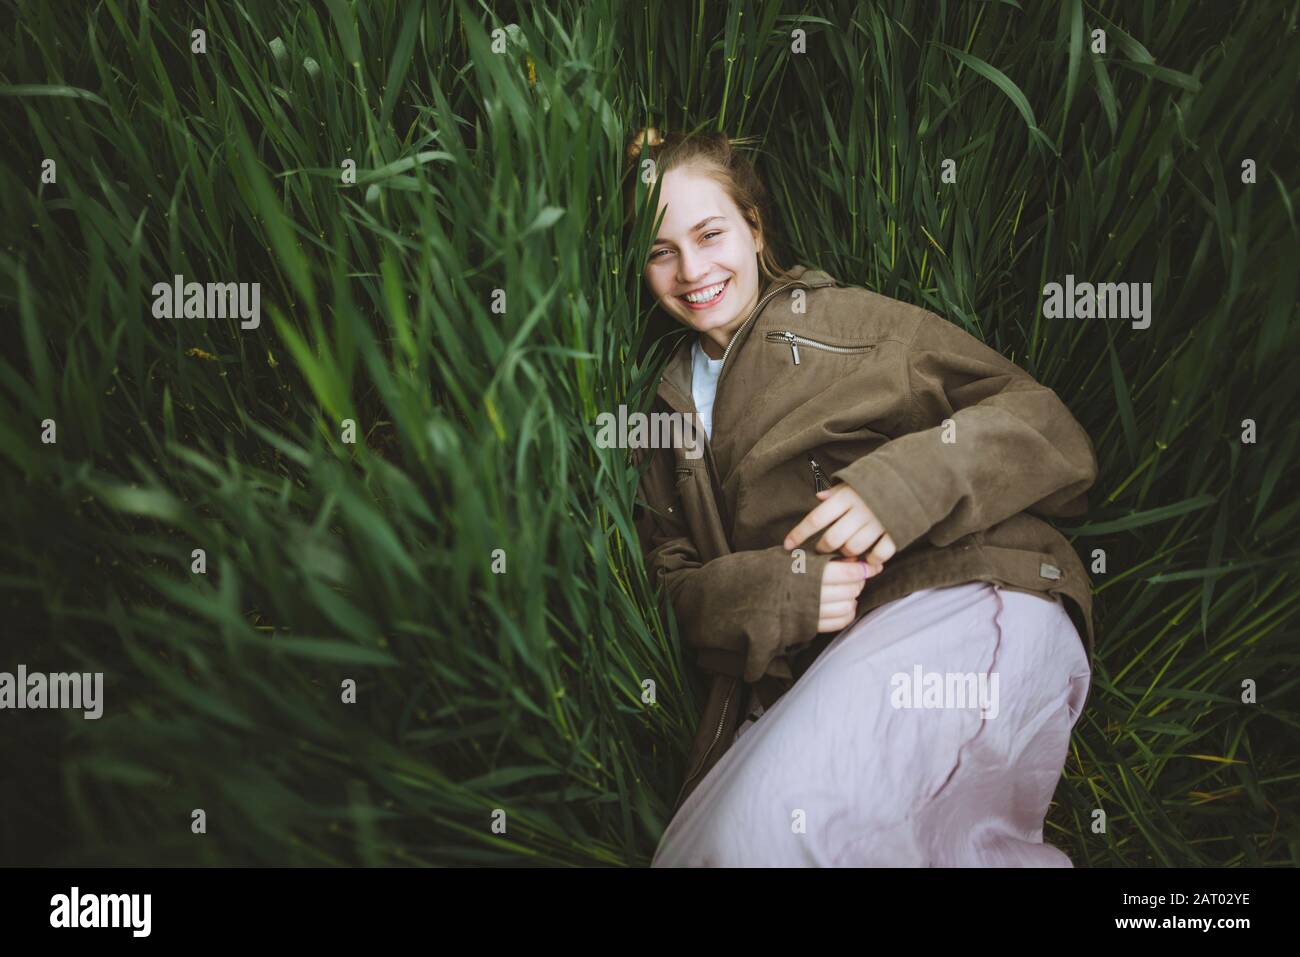 Femme souriante couchée dans l'herbe Banque D'Images